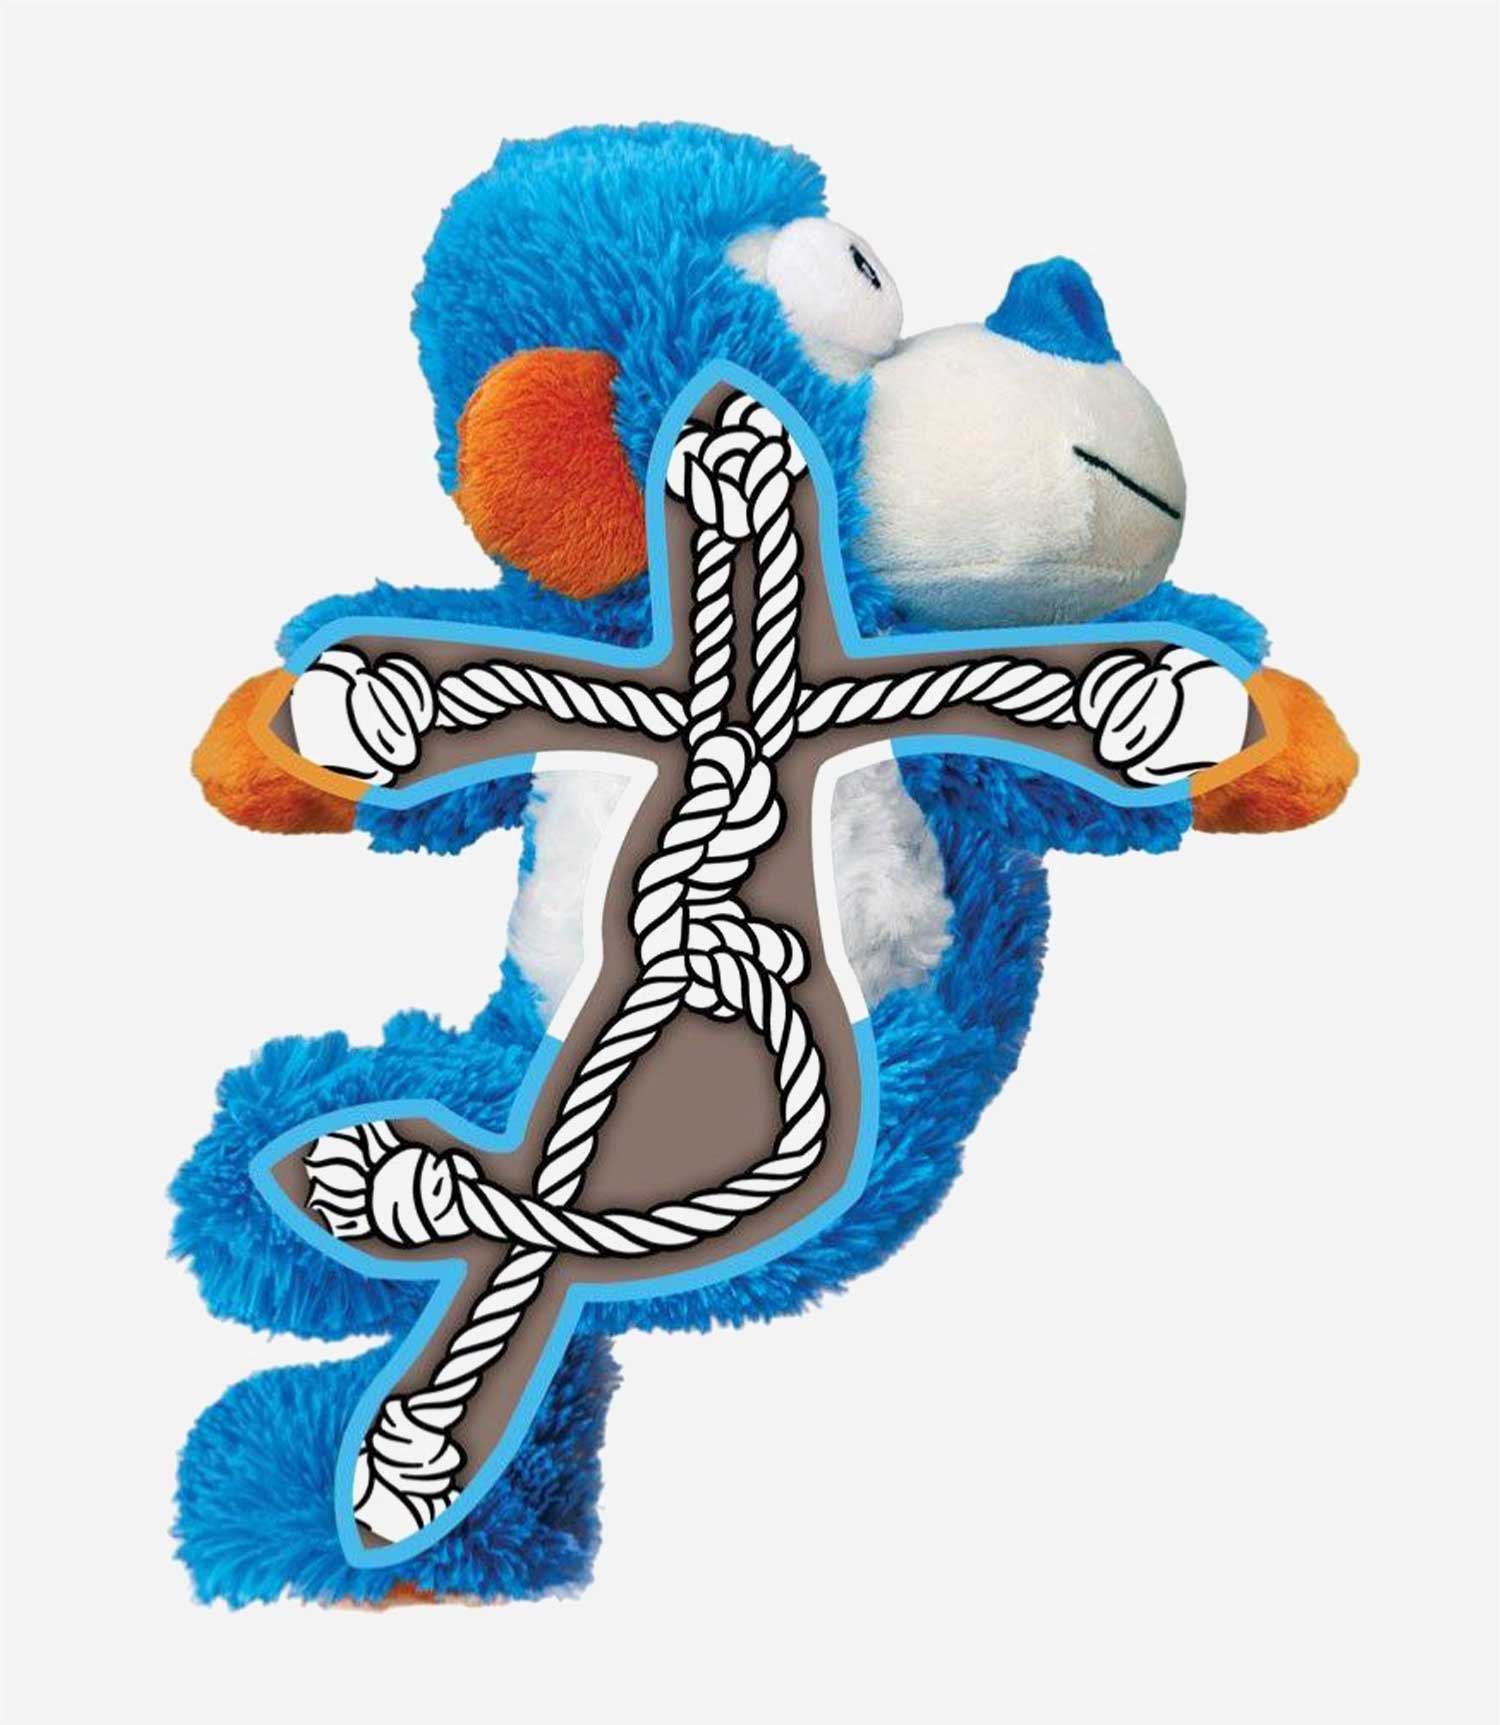 Kong Cross Knots Monkey Dog Toy - Nest Pets